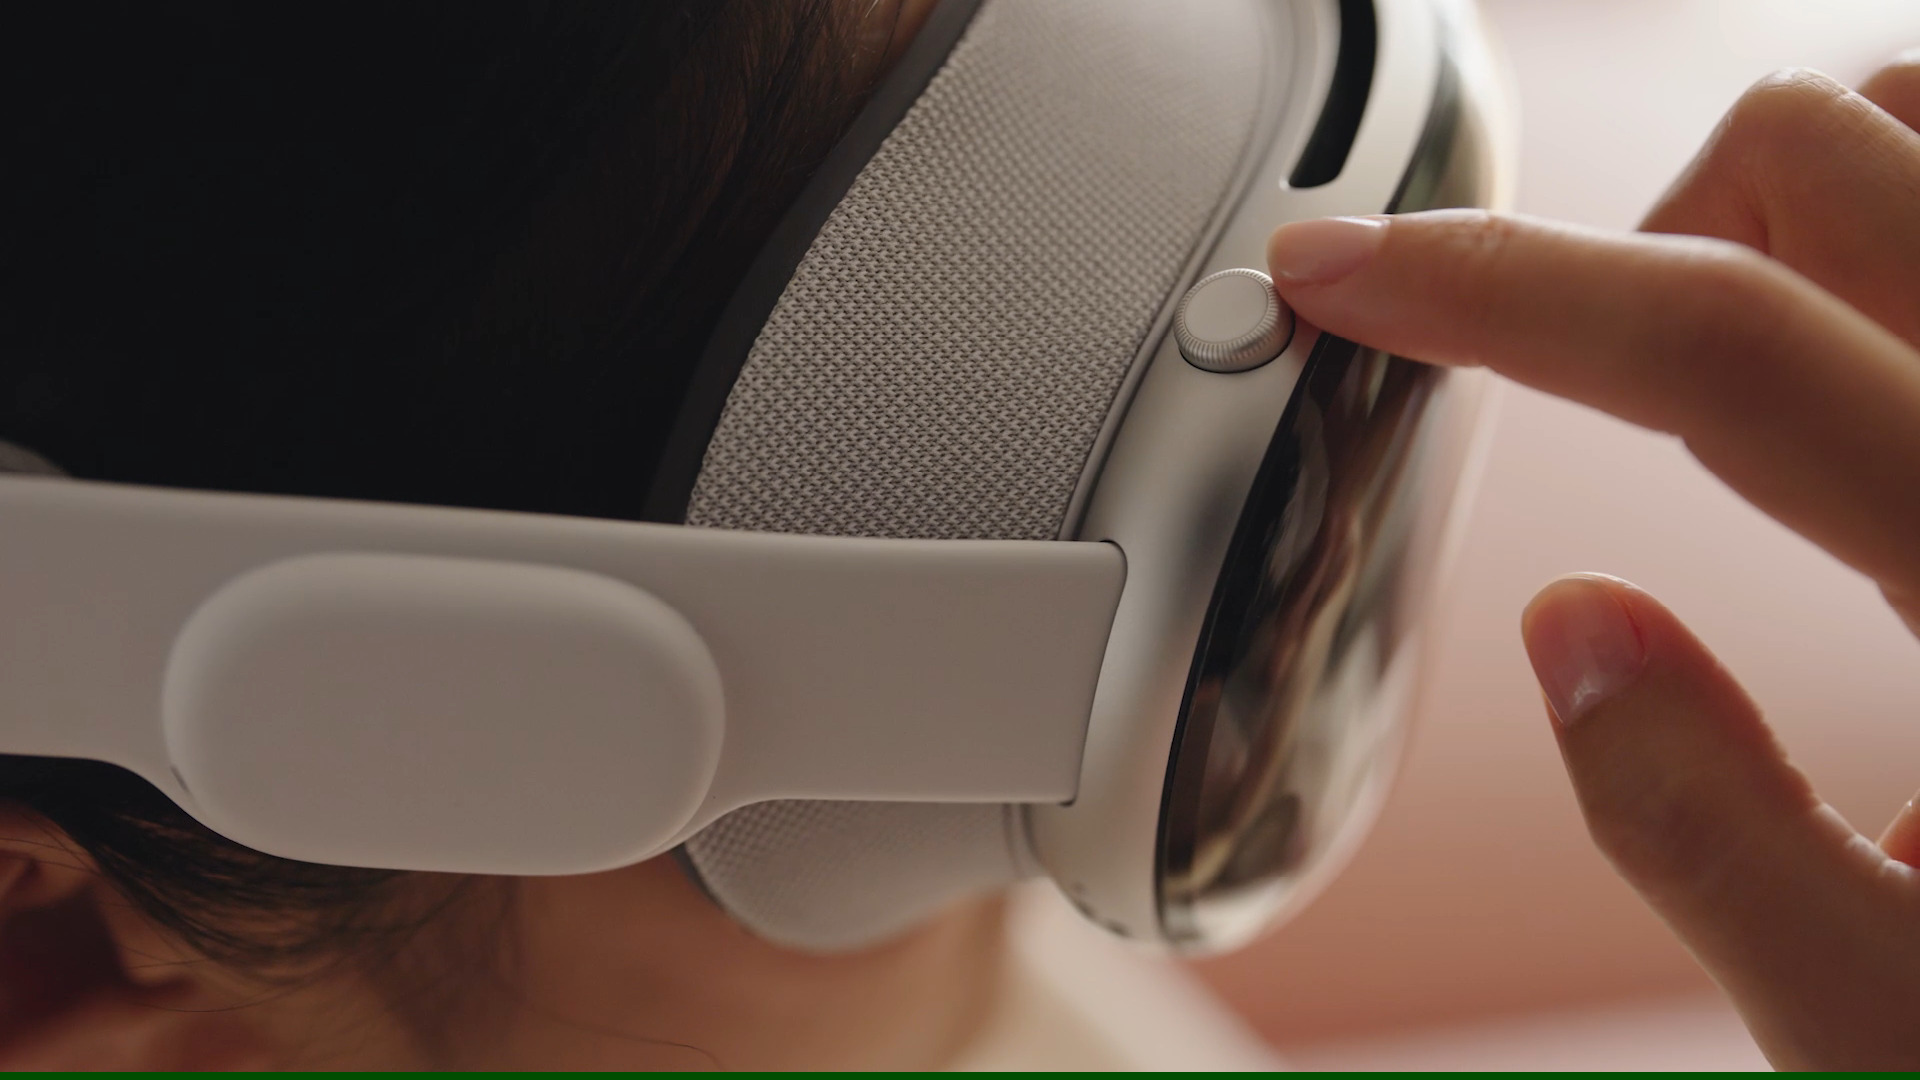 Le casque de réalité virtuelle de Samsung bientôt disponible